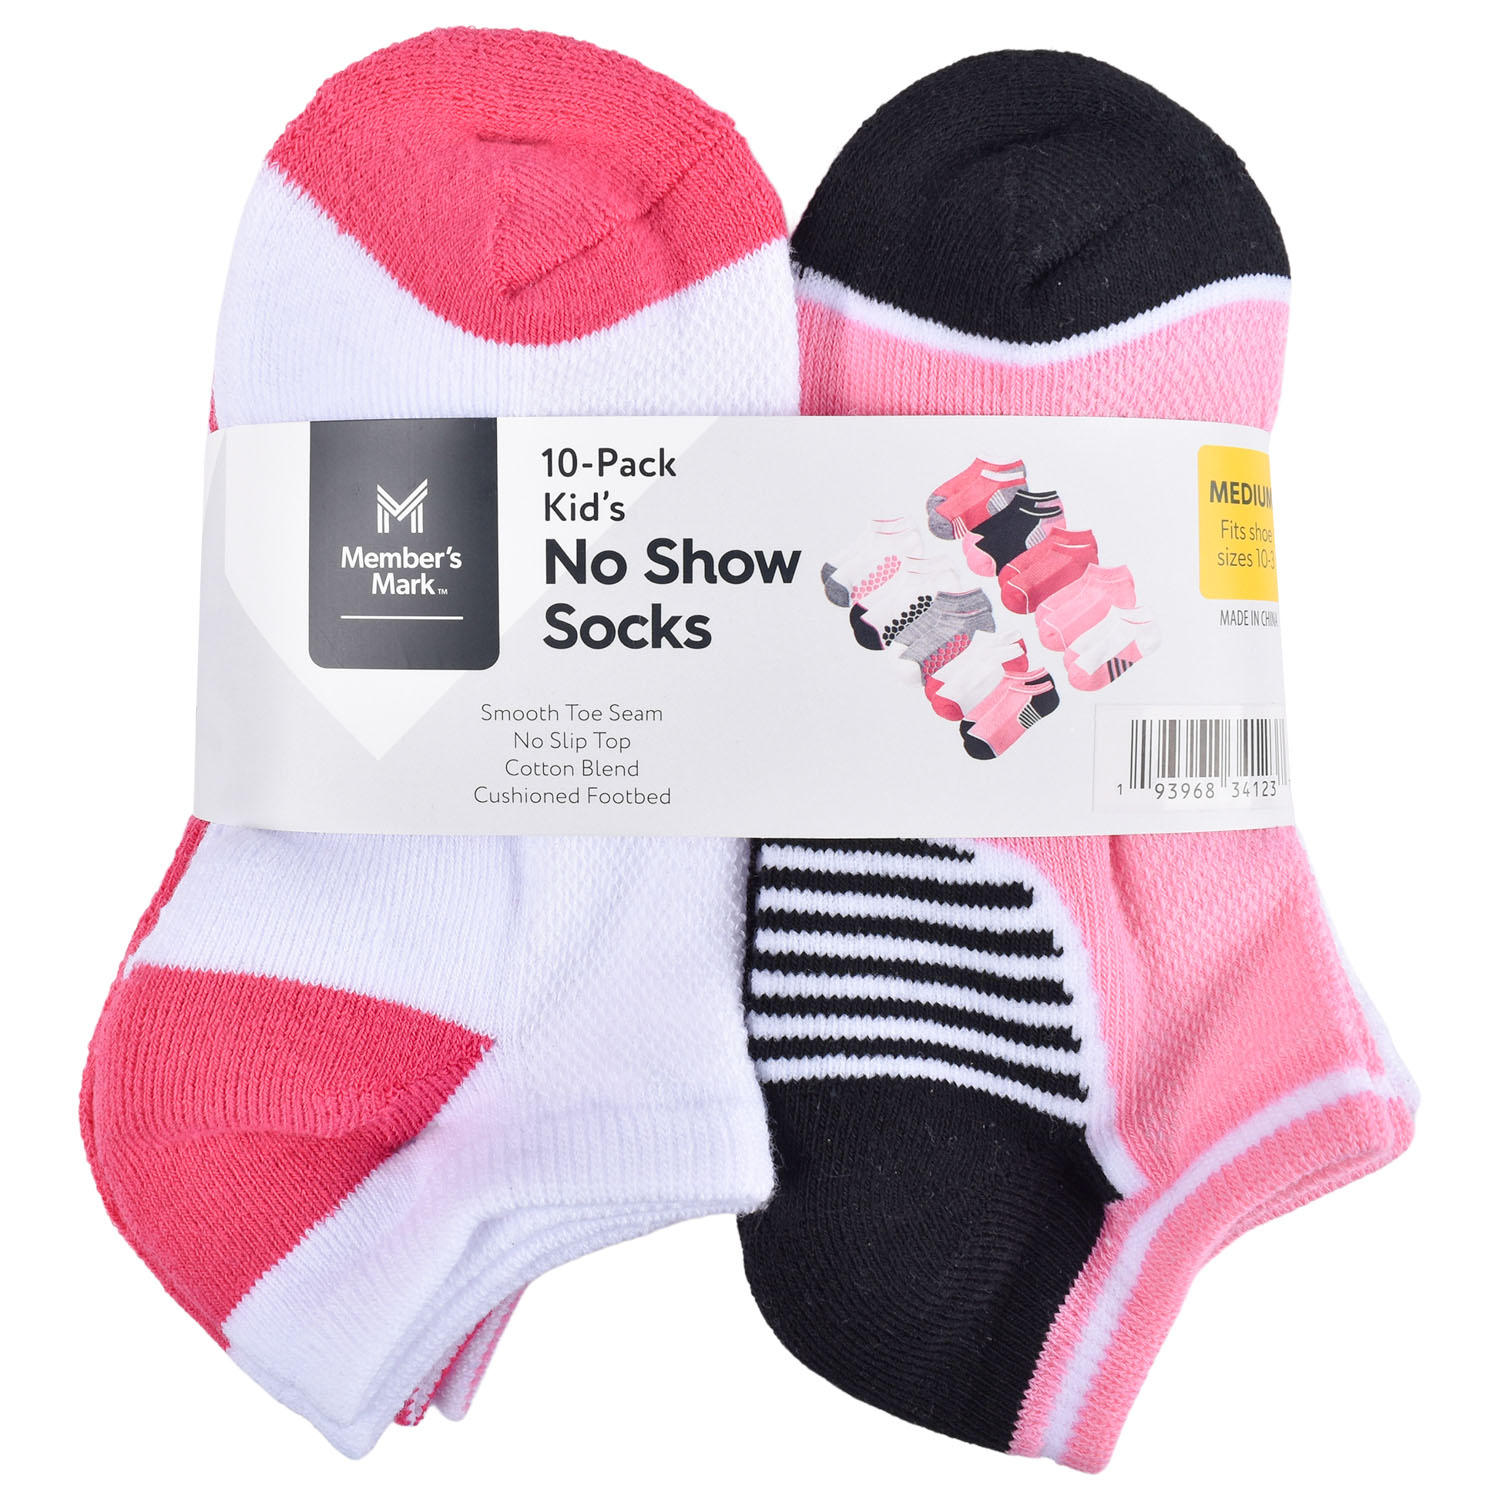 Member’s Mark Kid’s No Show Socks, 10 Pack